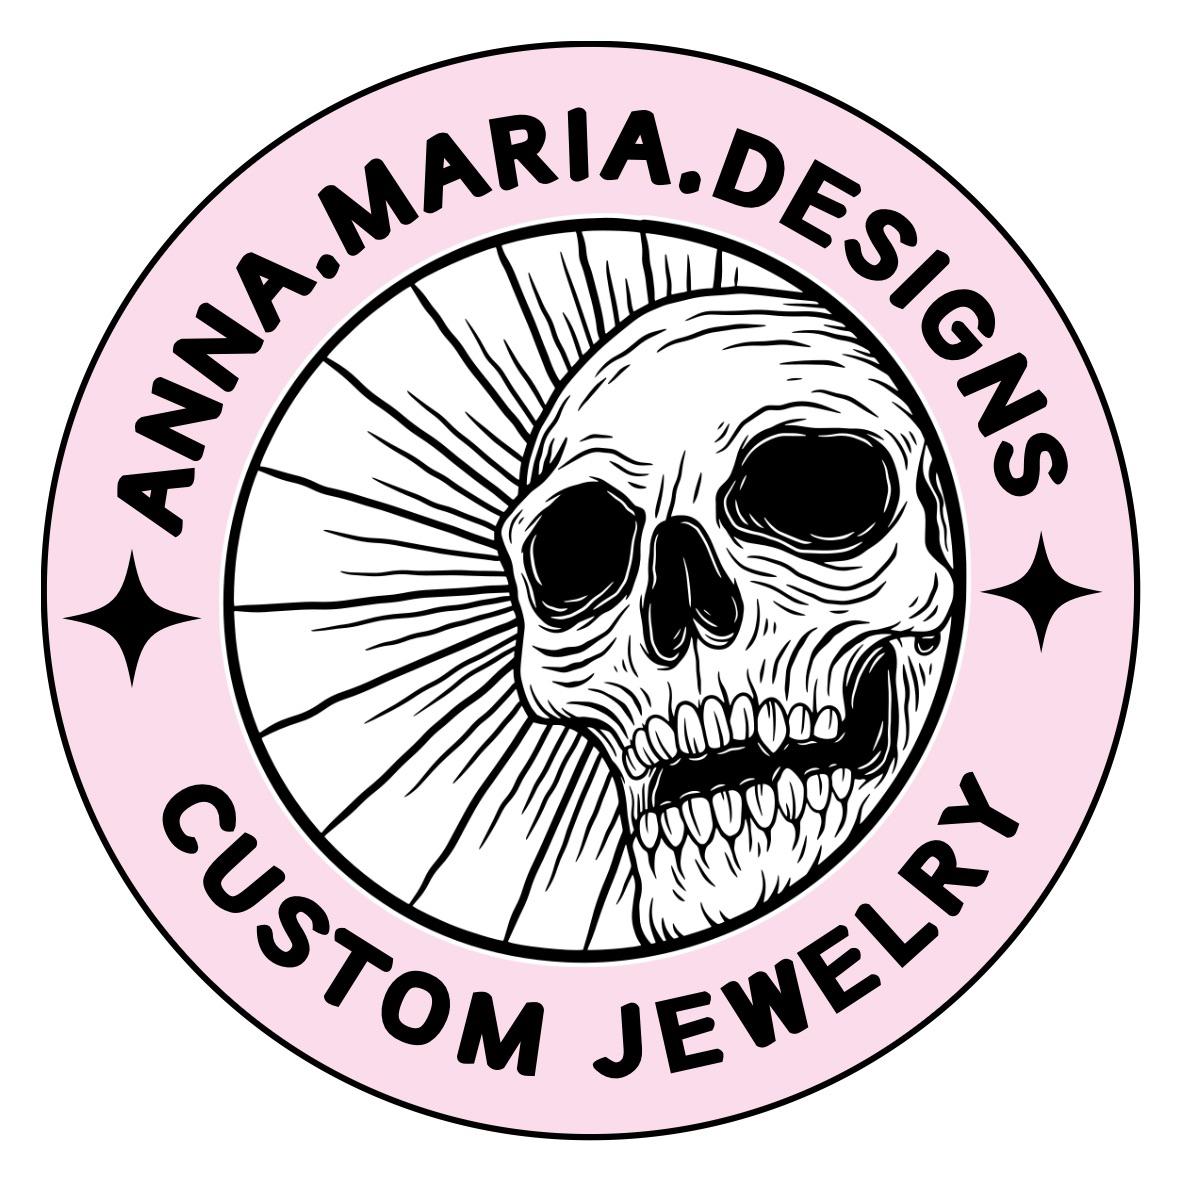 A.maría.designs's images